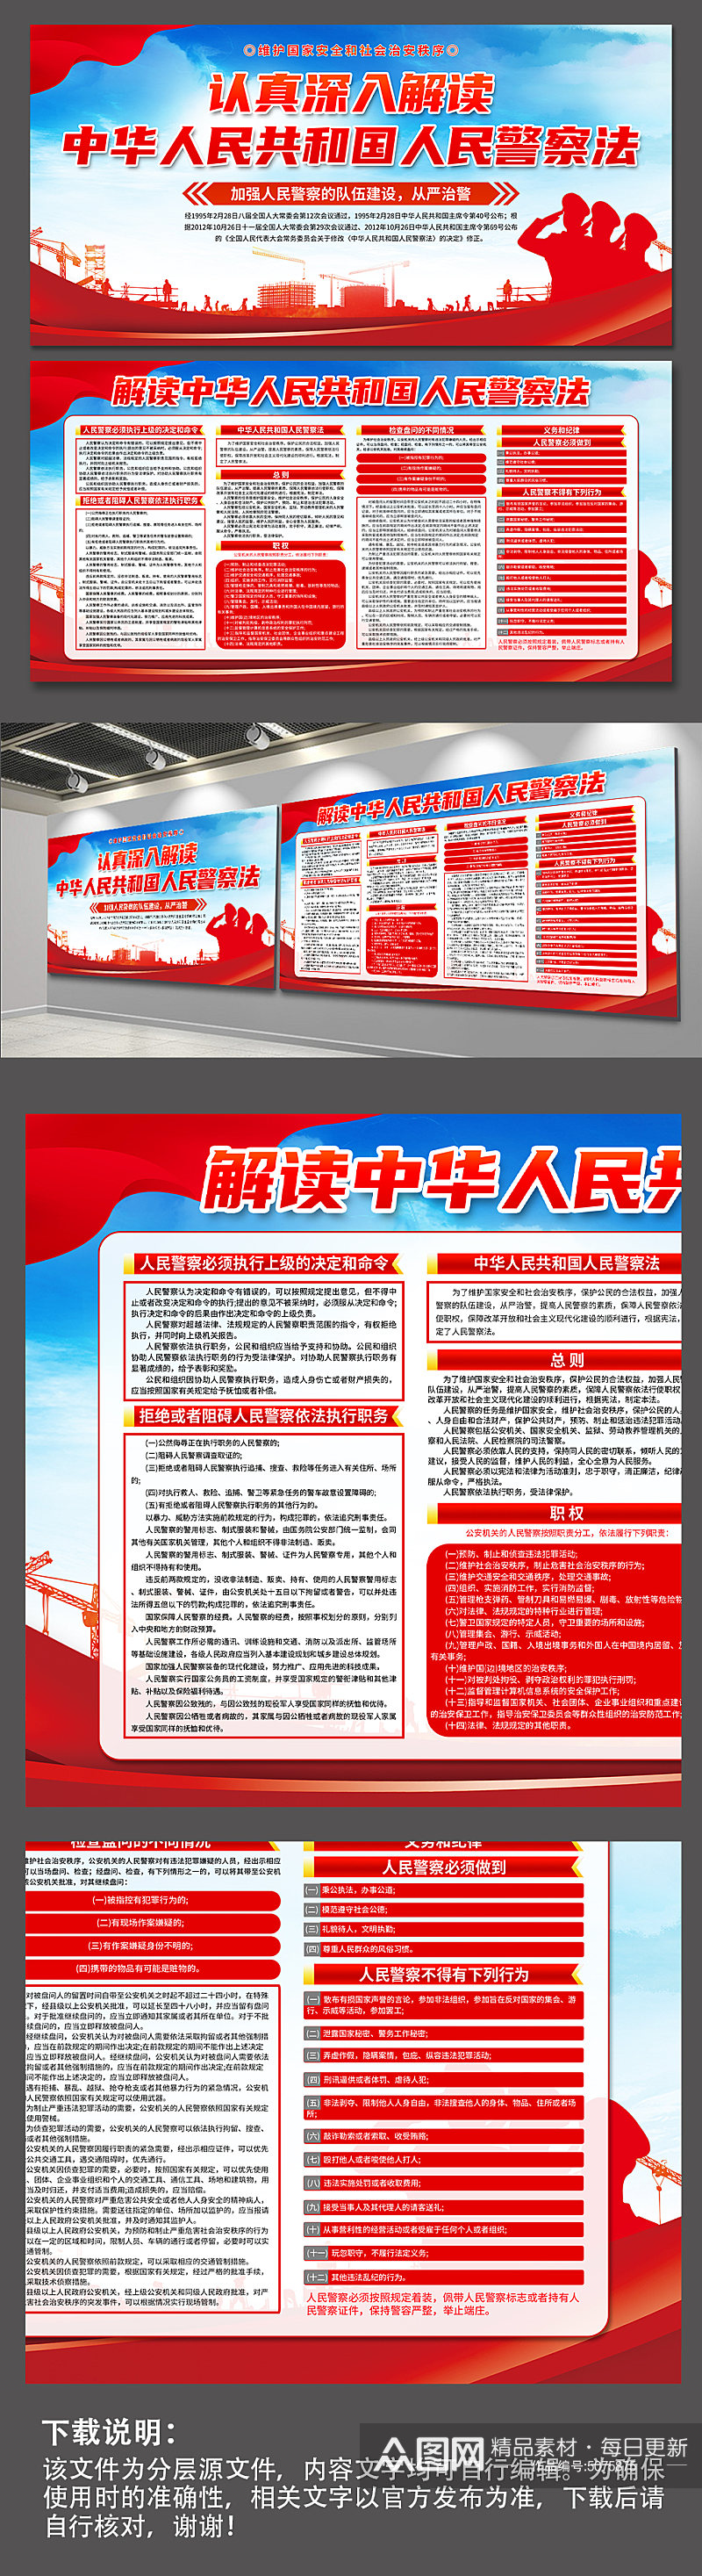 蓝色中华人民共和国人民警察法党建展板素材